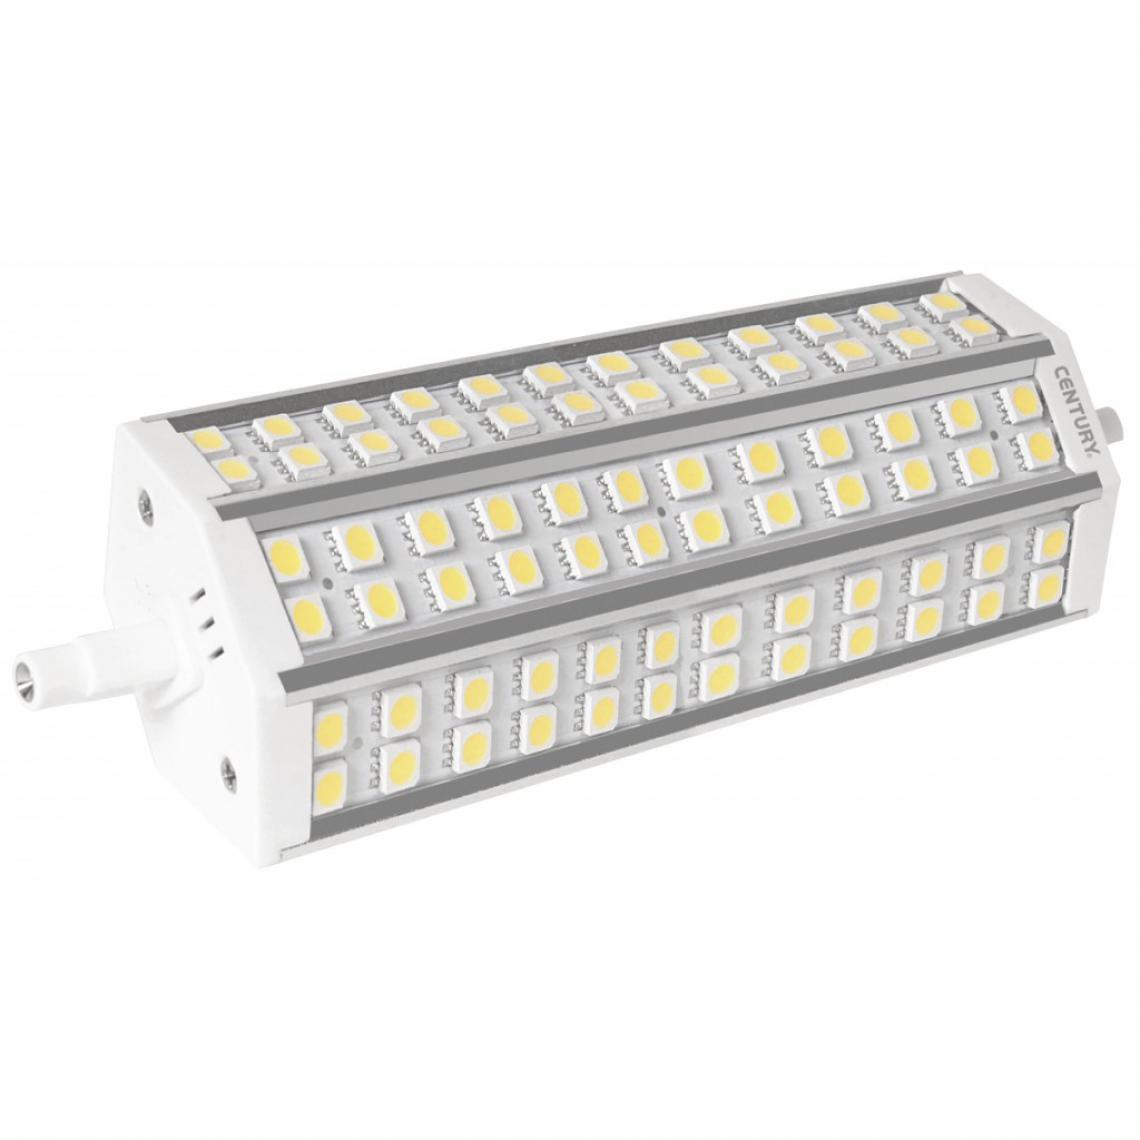 Alpexe - Ampoule LED R7S Linéaire 15 W 1400 lm 4000 K - Ampoules LED